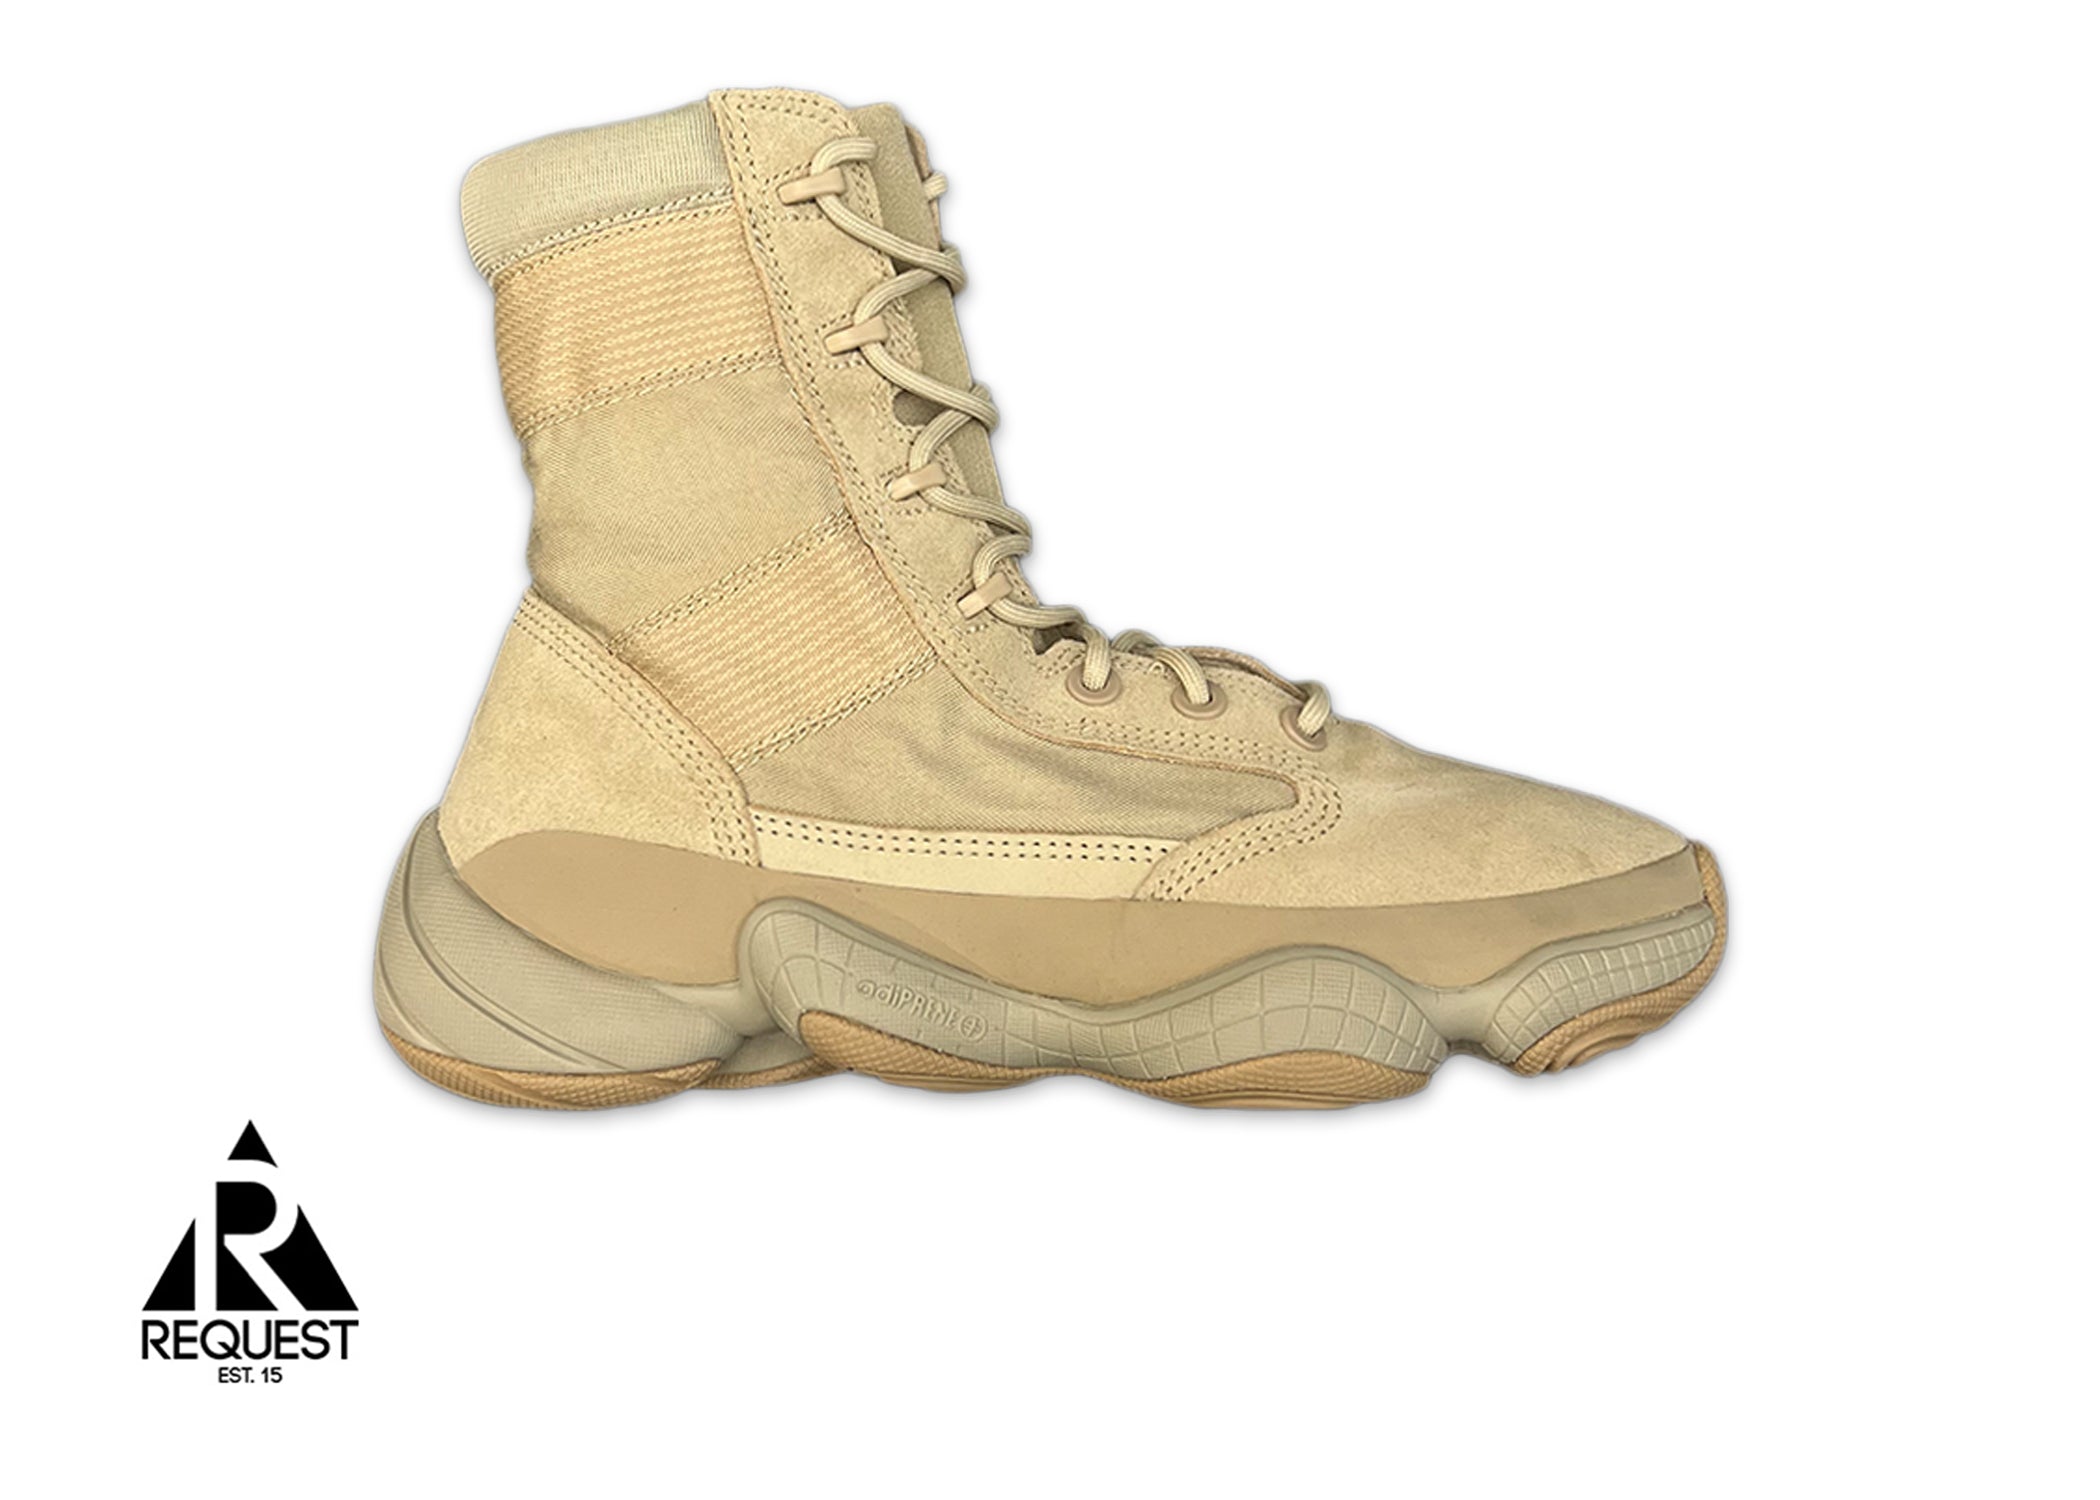 Adidas Yeezy Tactical 500 Boot "Khaki"